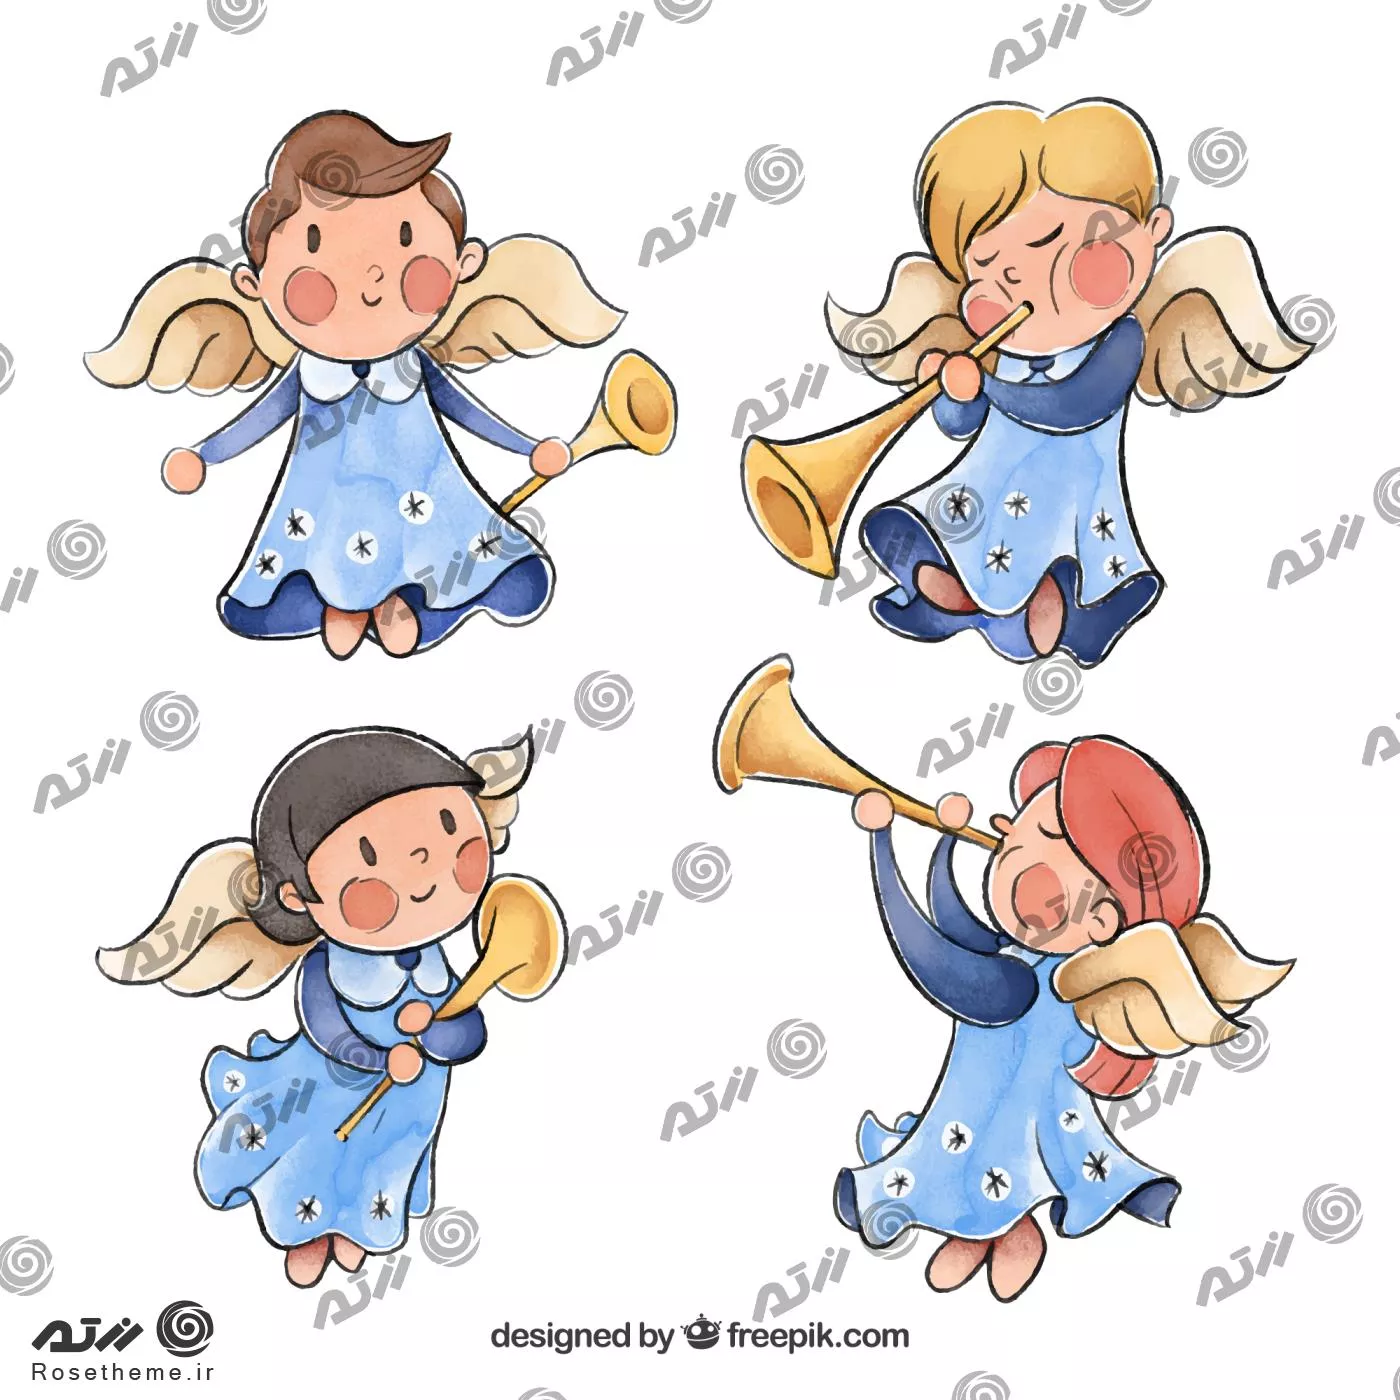 وکتور رایگان فرشته های کودکانه در حالت های مختلف درحال شیپور زدن به صورت لایه باز